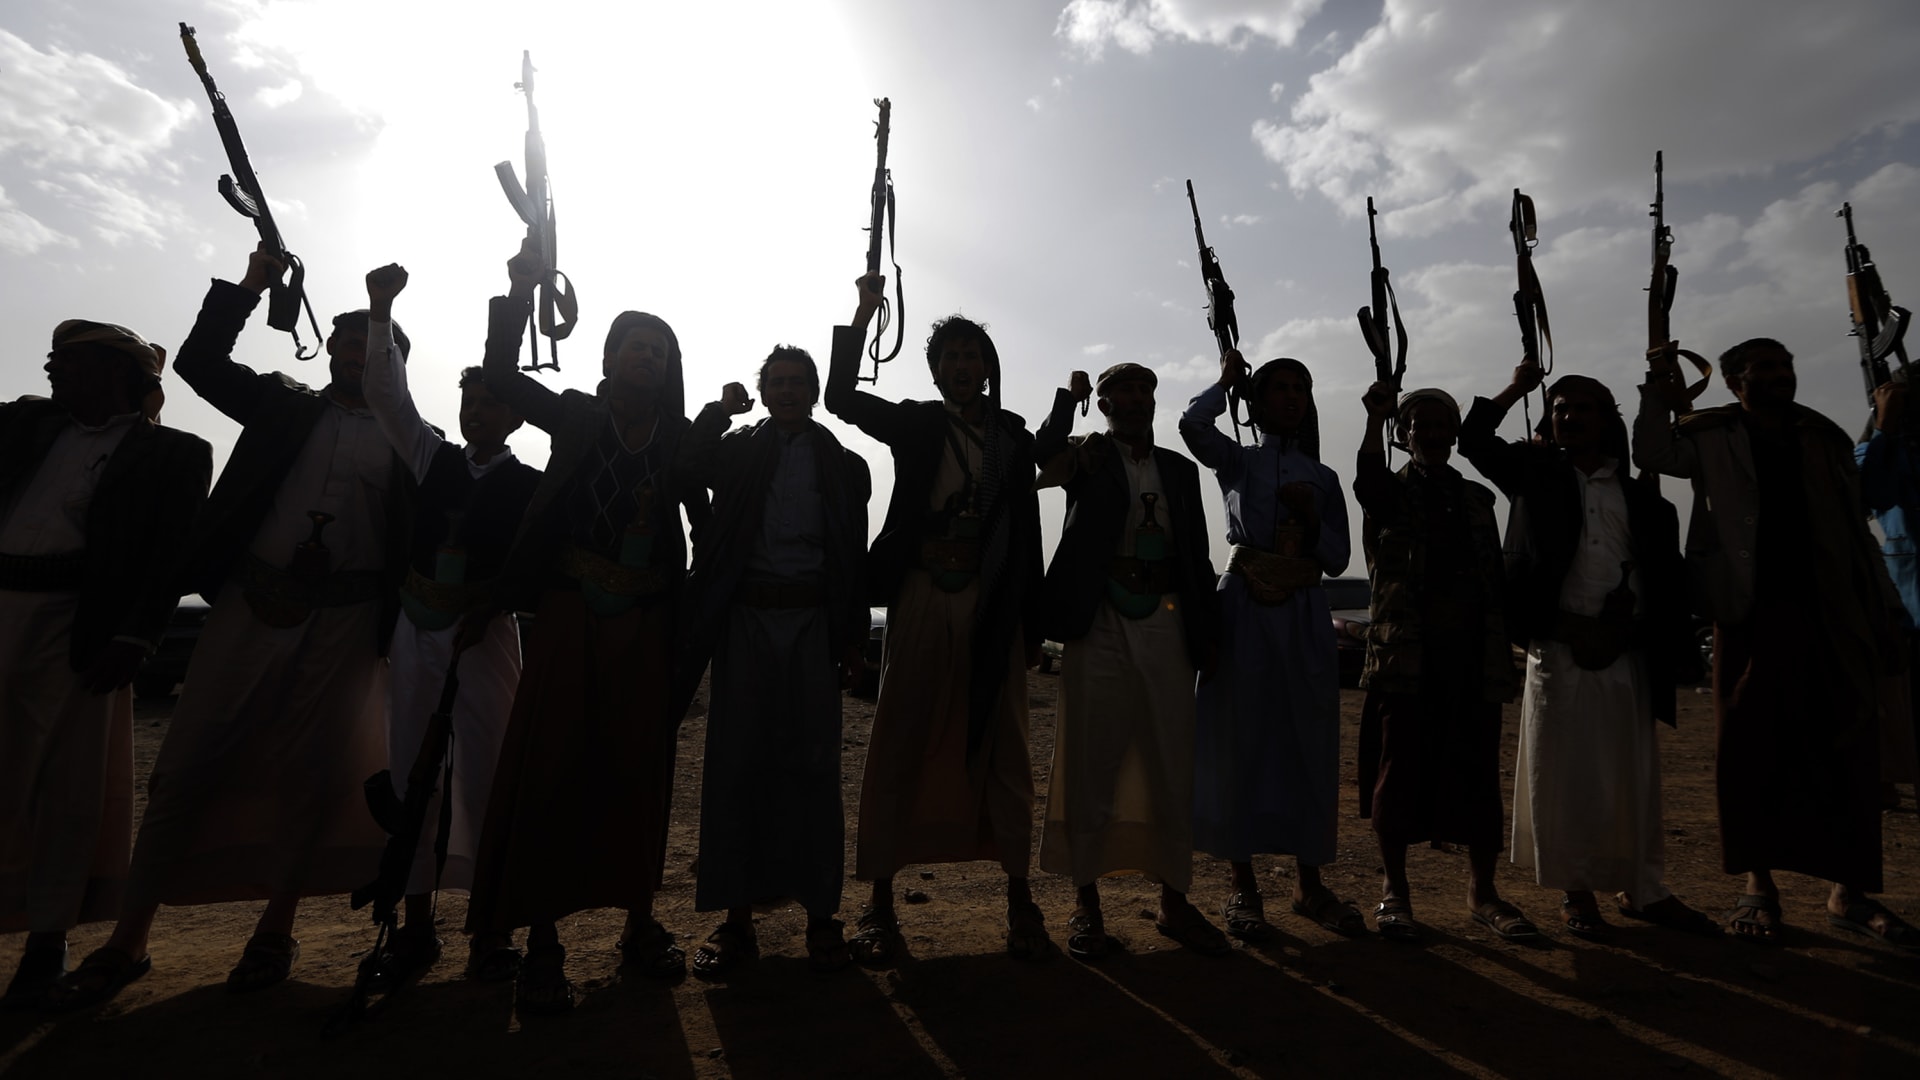 التحالف السعودي في اليمن: استهداف "دار الرئاسة" بعملية استخباراتية دقيقة